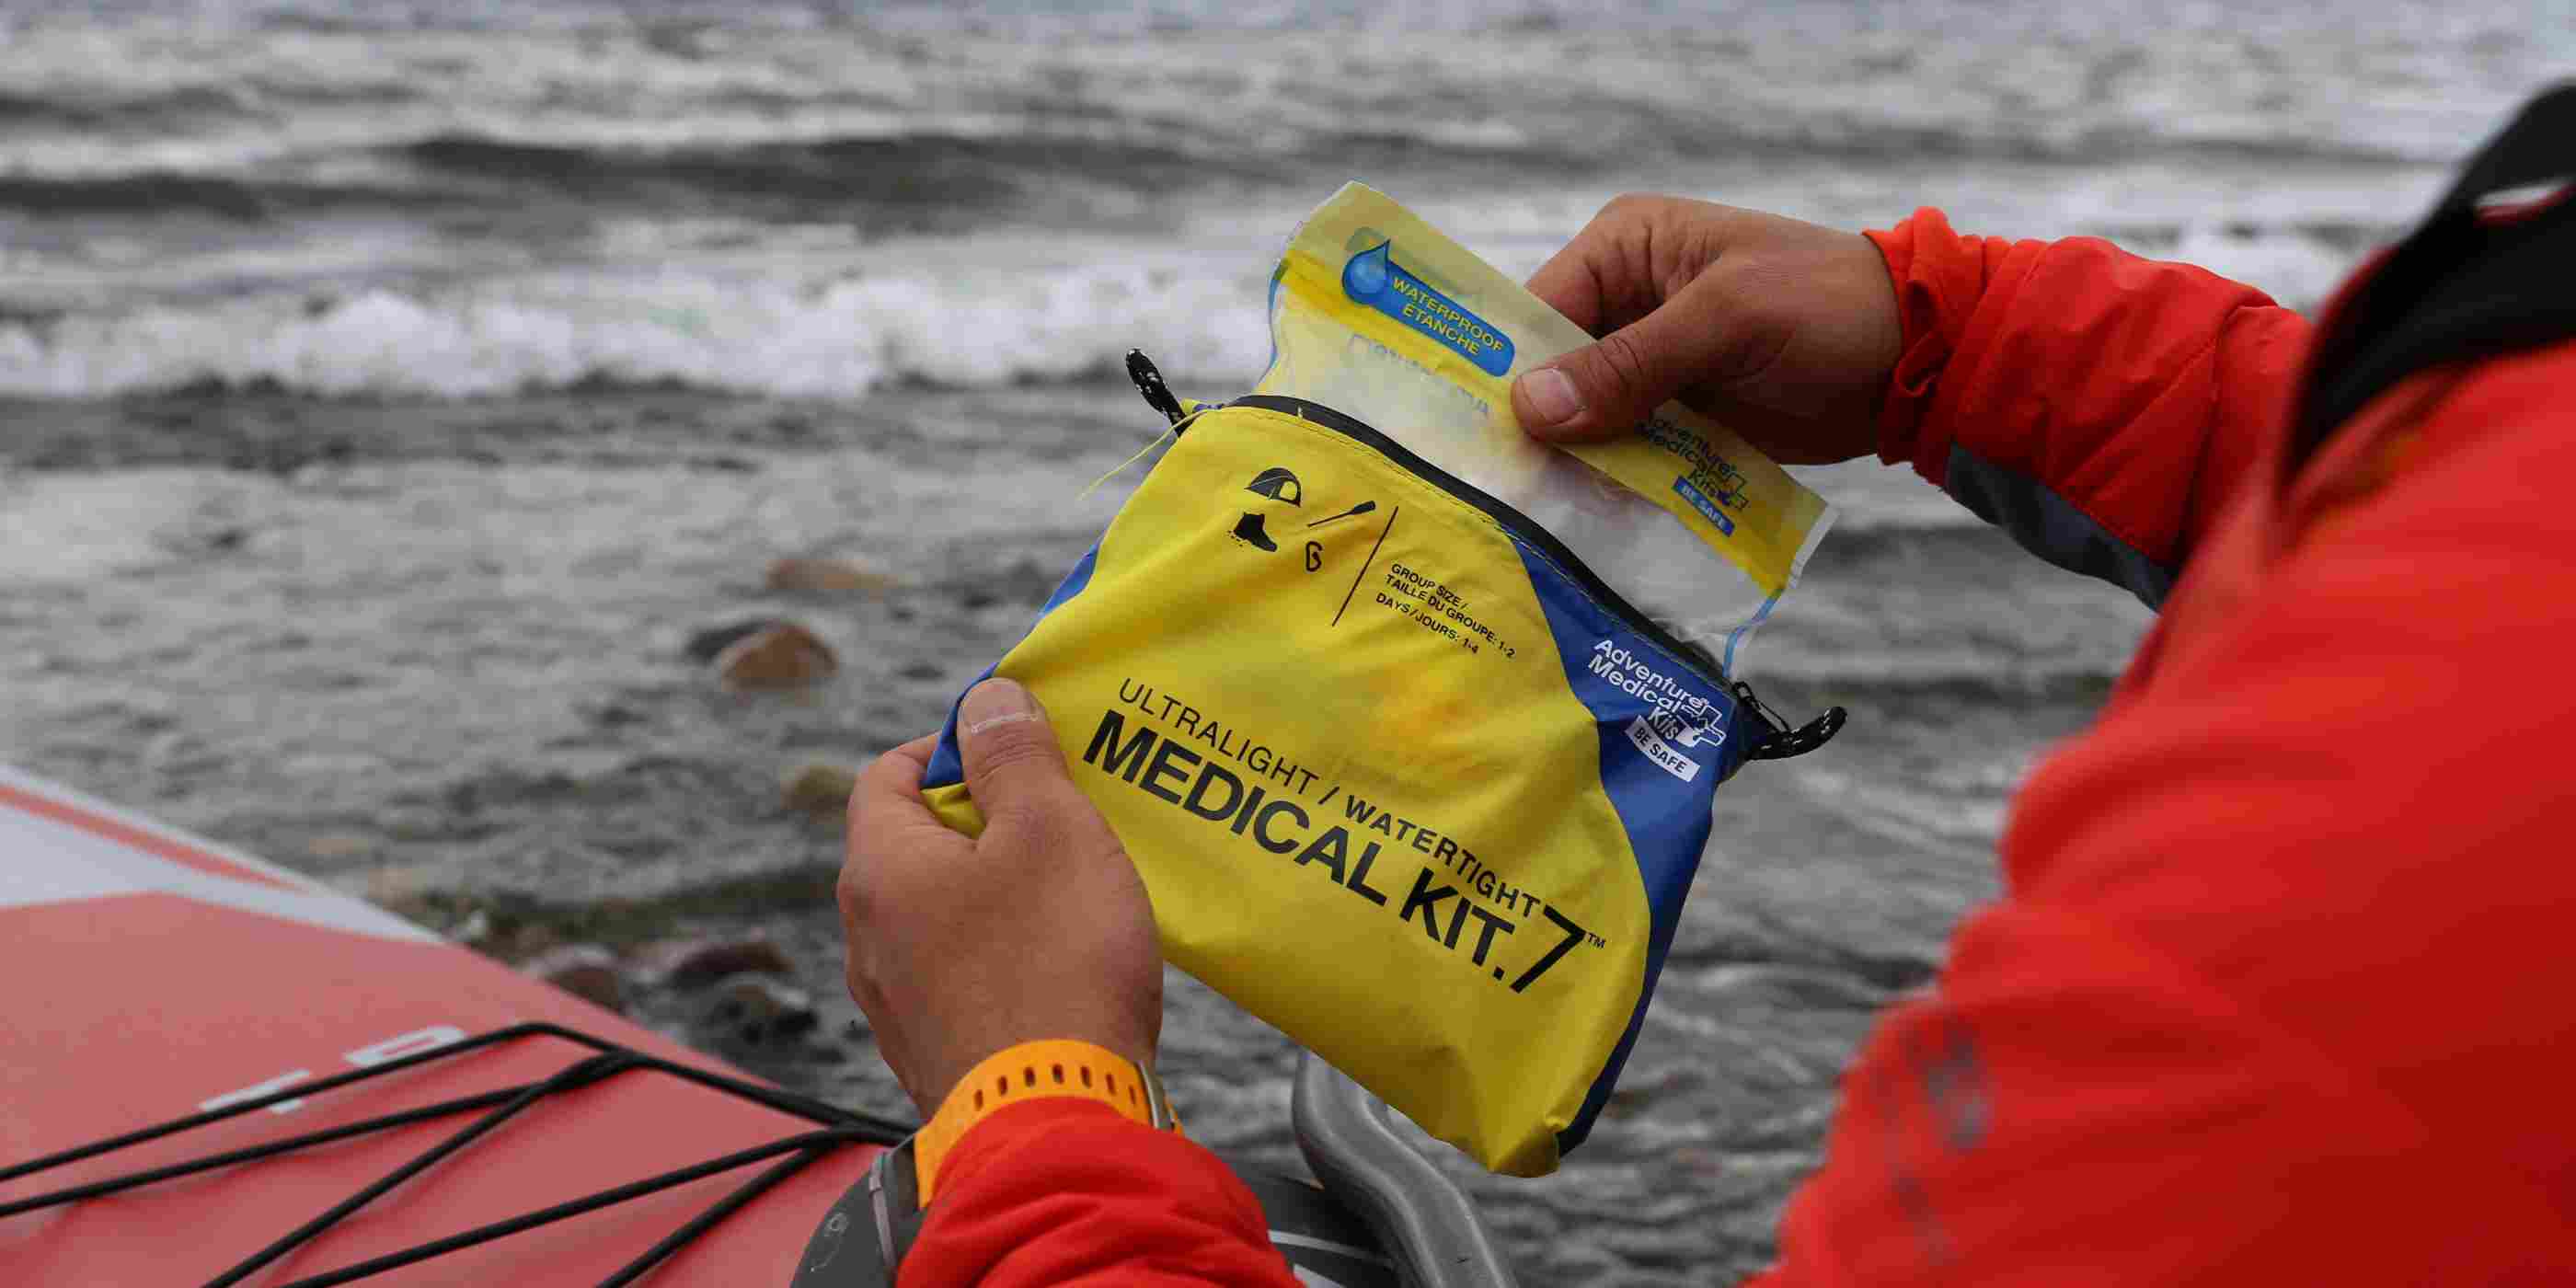 Ultralight/Watertight Medical Kit - .7 kayaker opening kit while kayaking